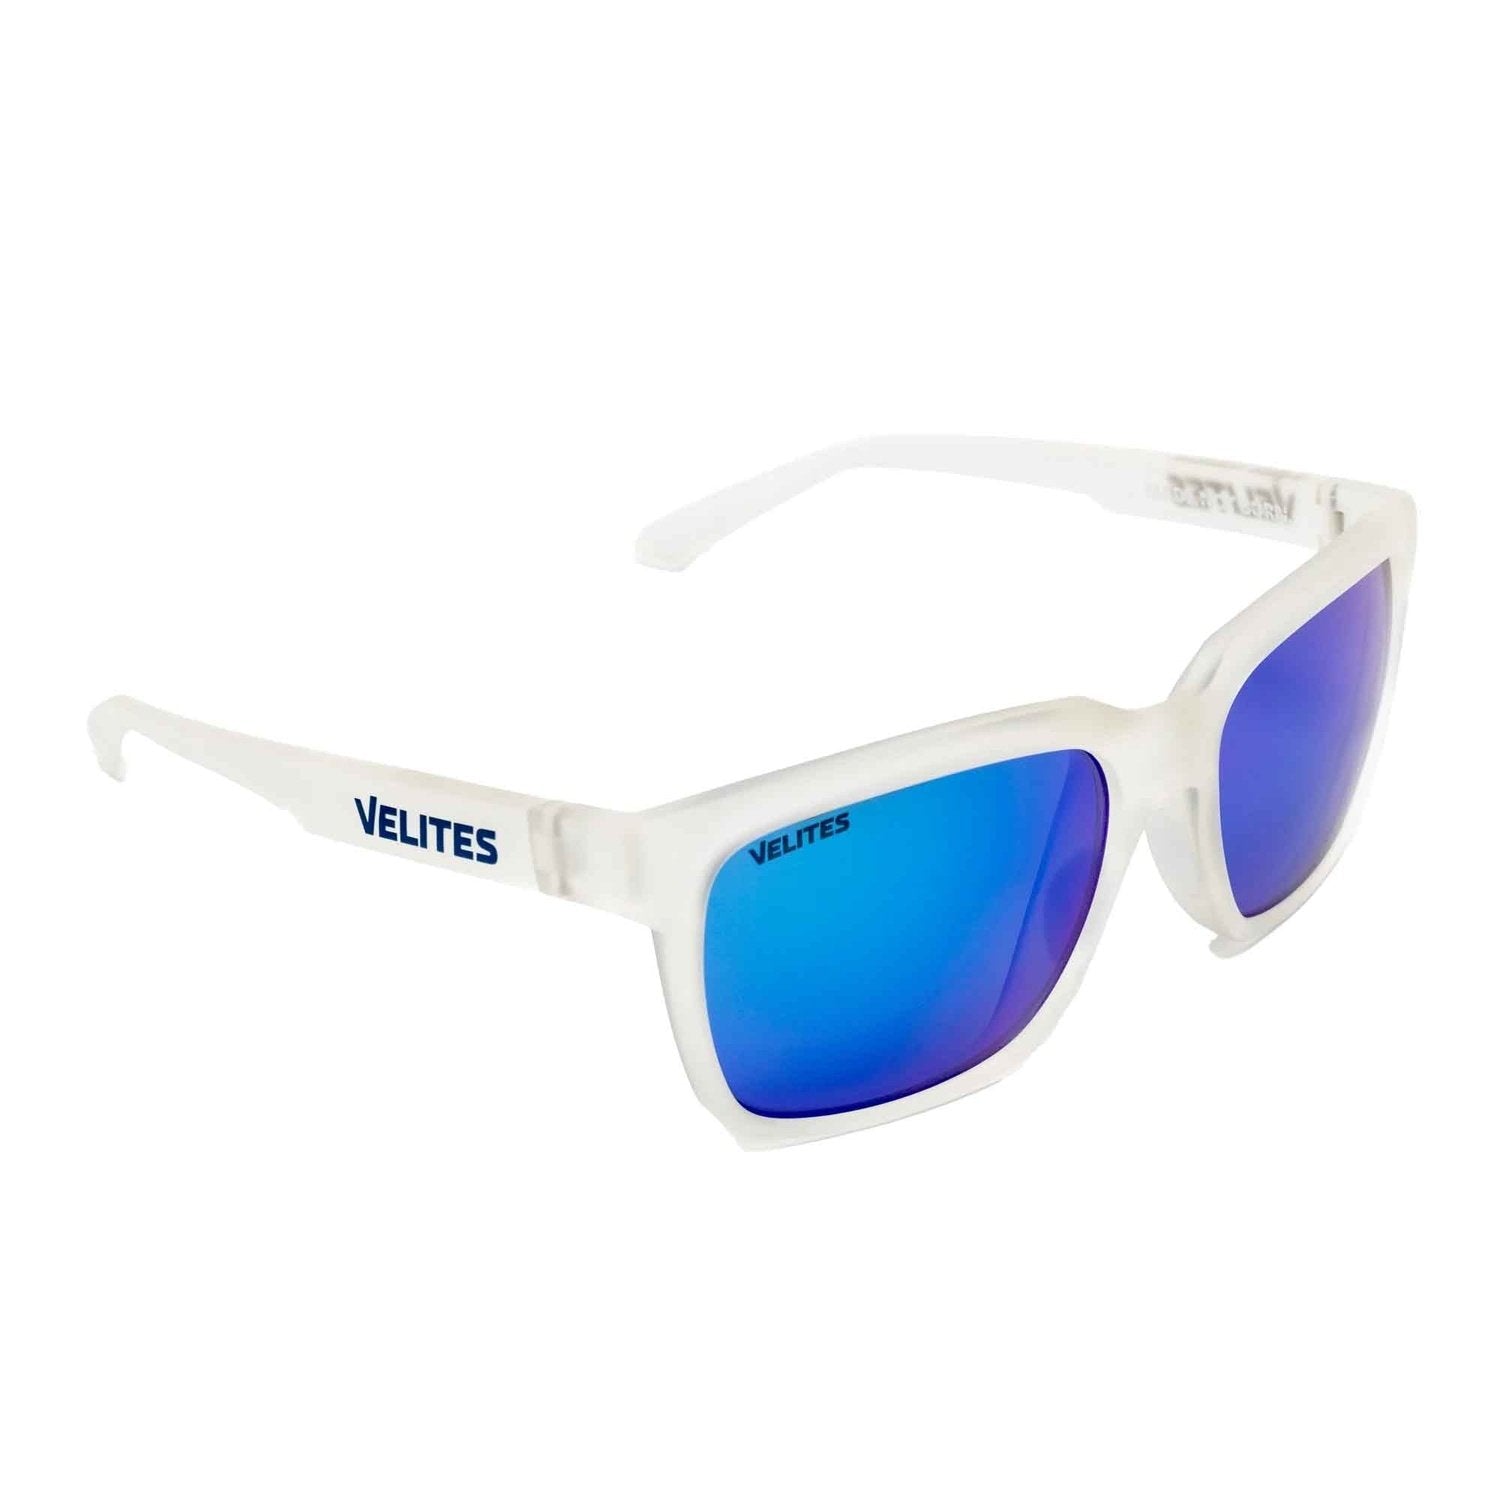 Velites Sonnenbrille "Urban Sport" Transparent Matt/Blau kaufen bei HighPowered.ch